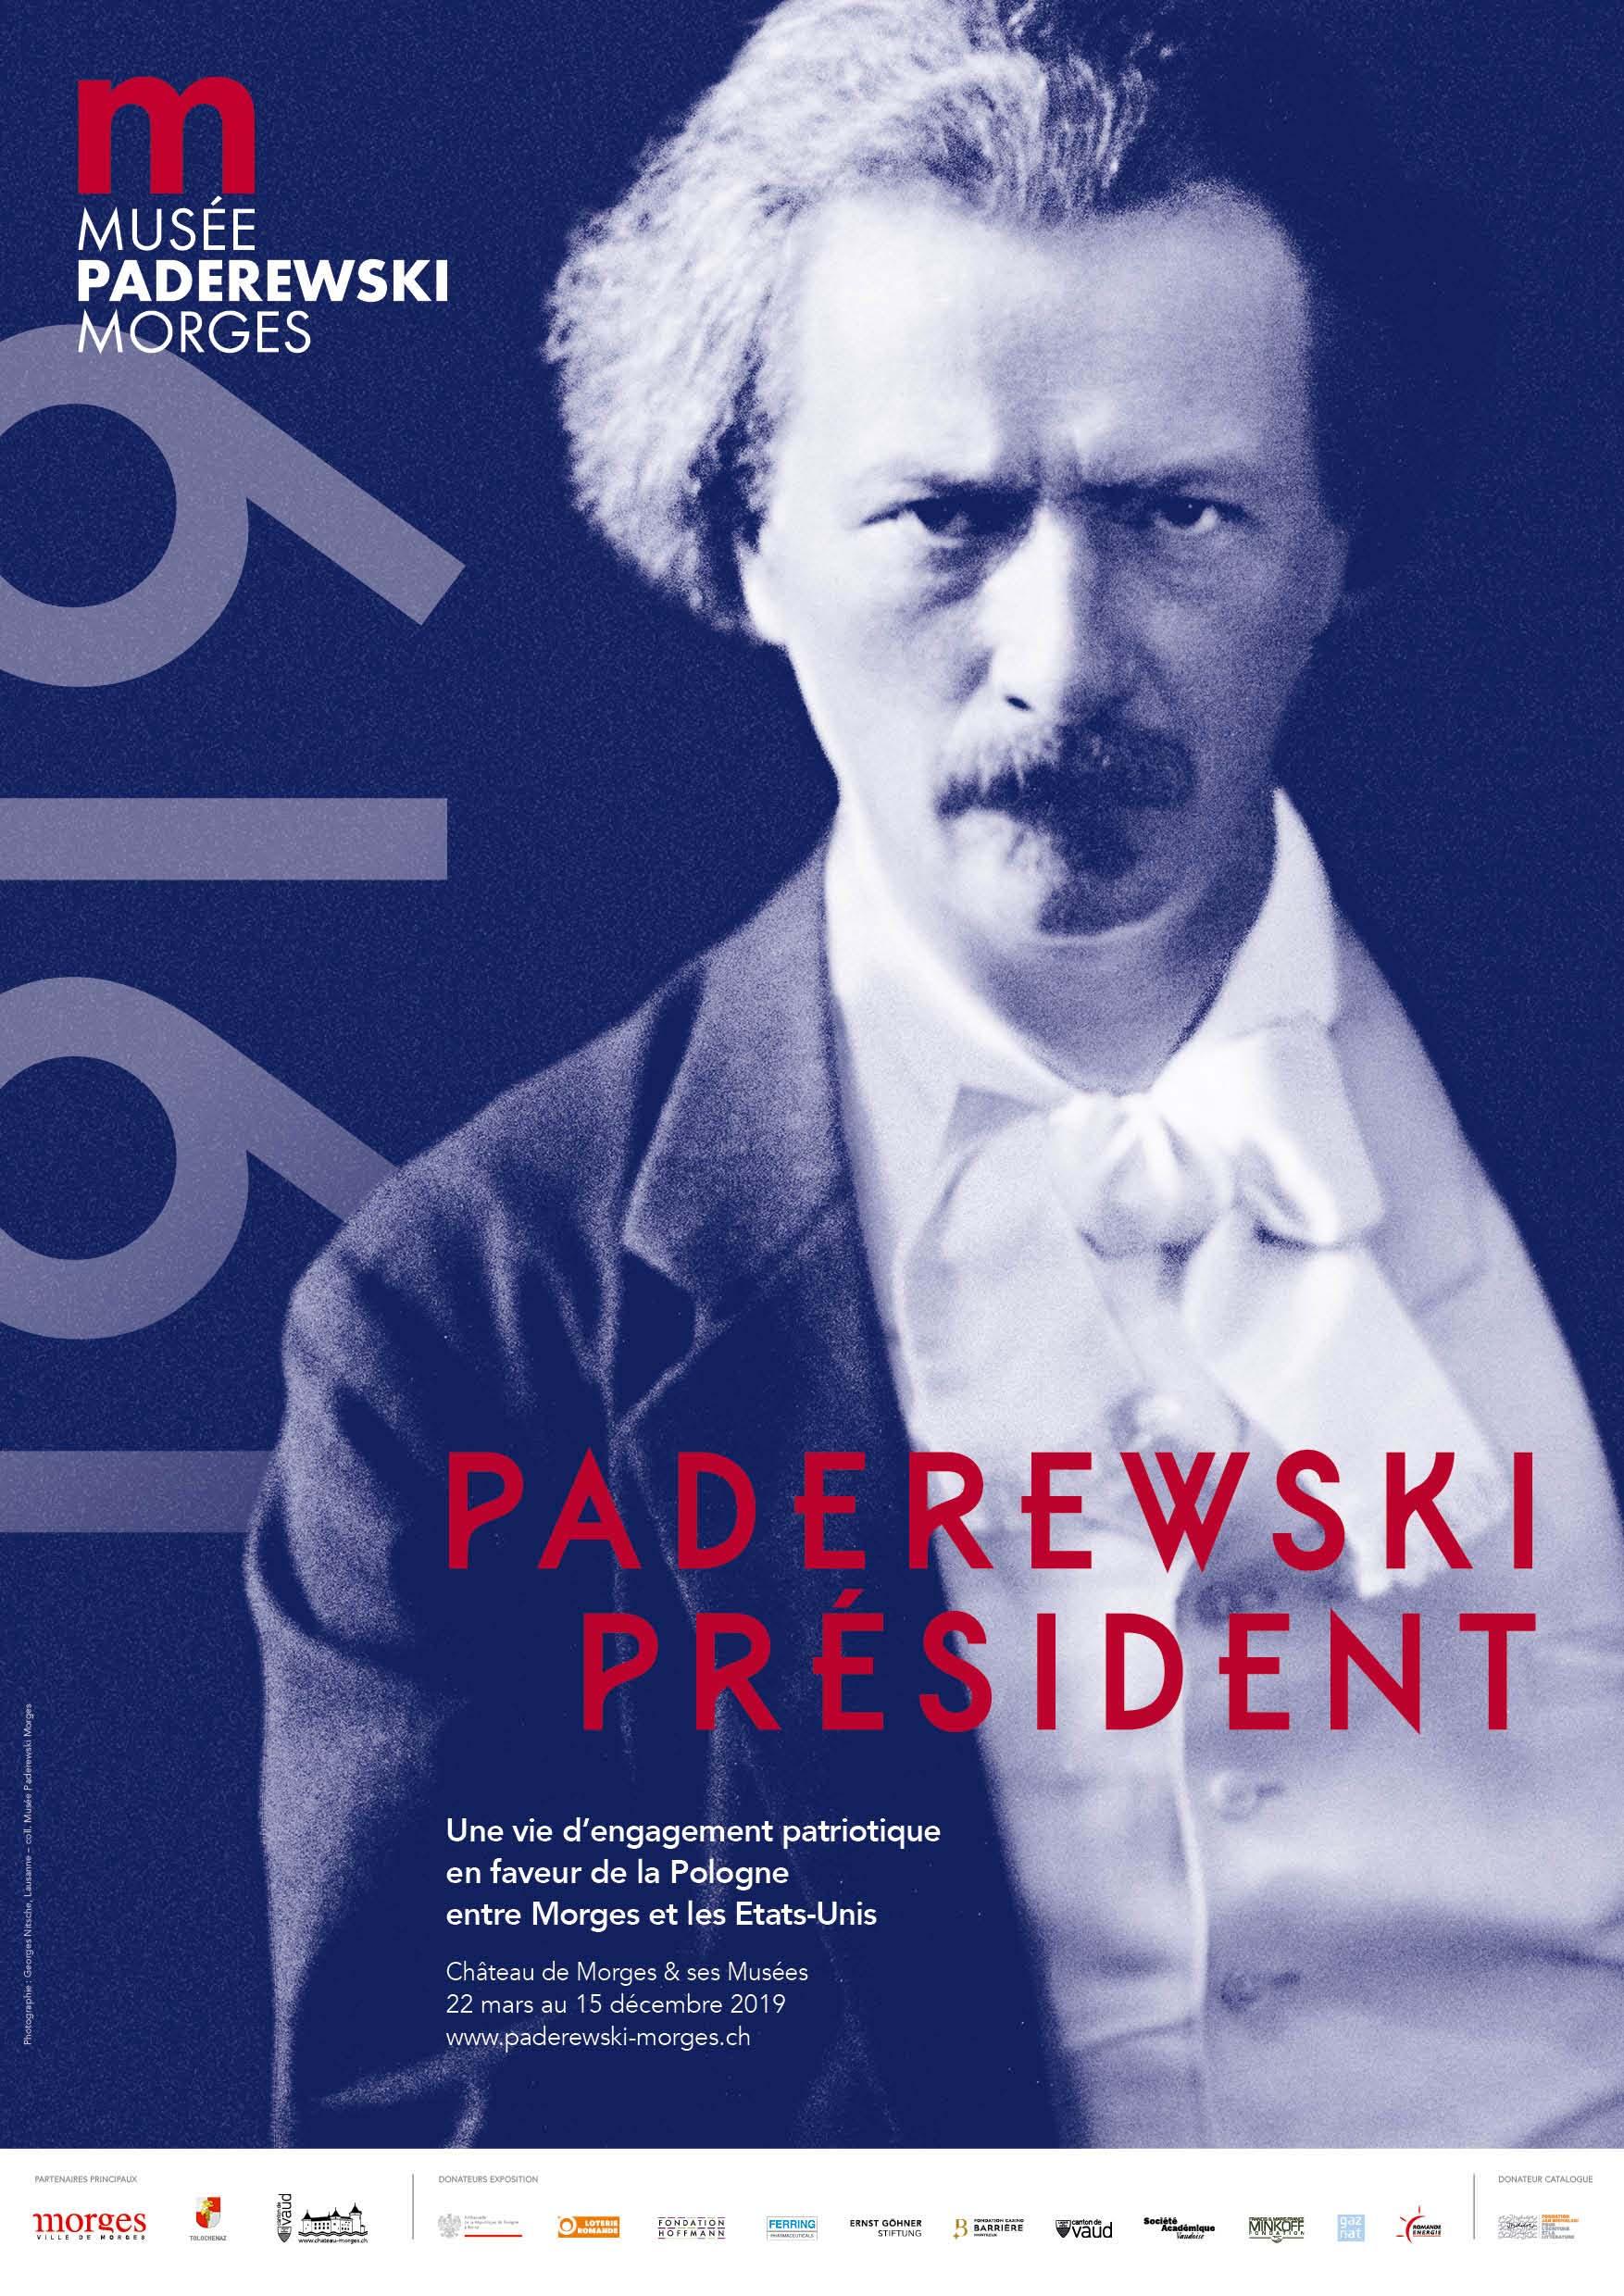 L'affice de l'exposition "Paderewski Président". [Collections du Musée Paderewski de Morges]